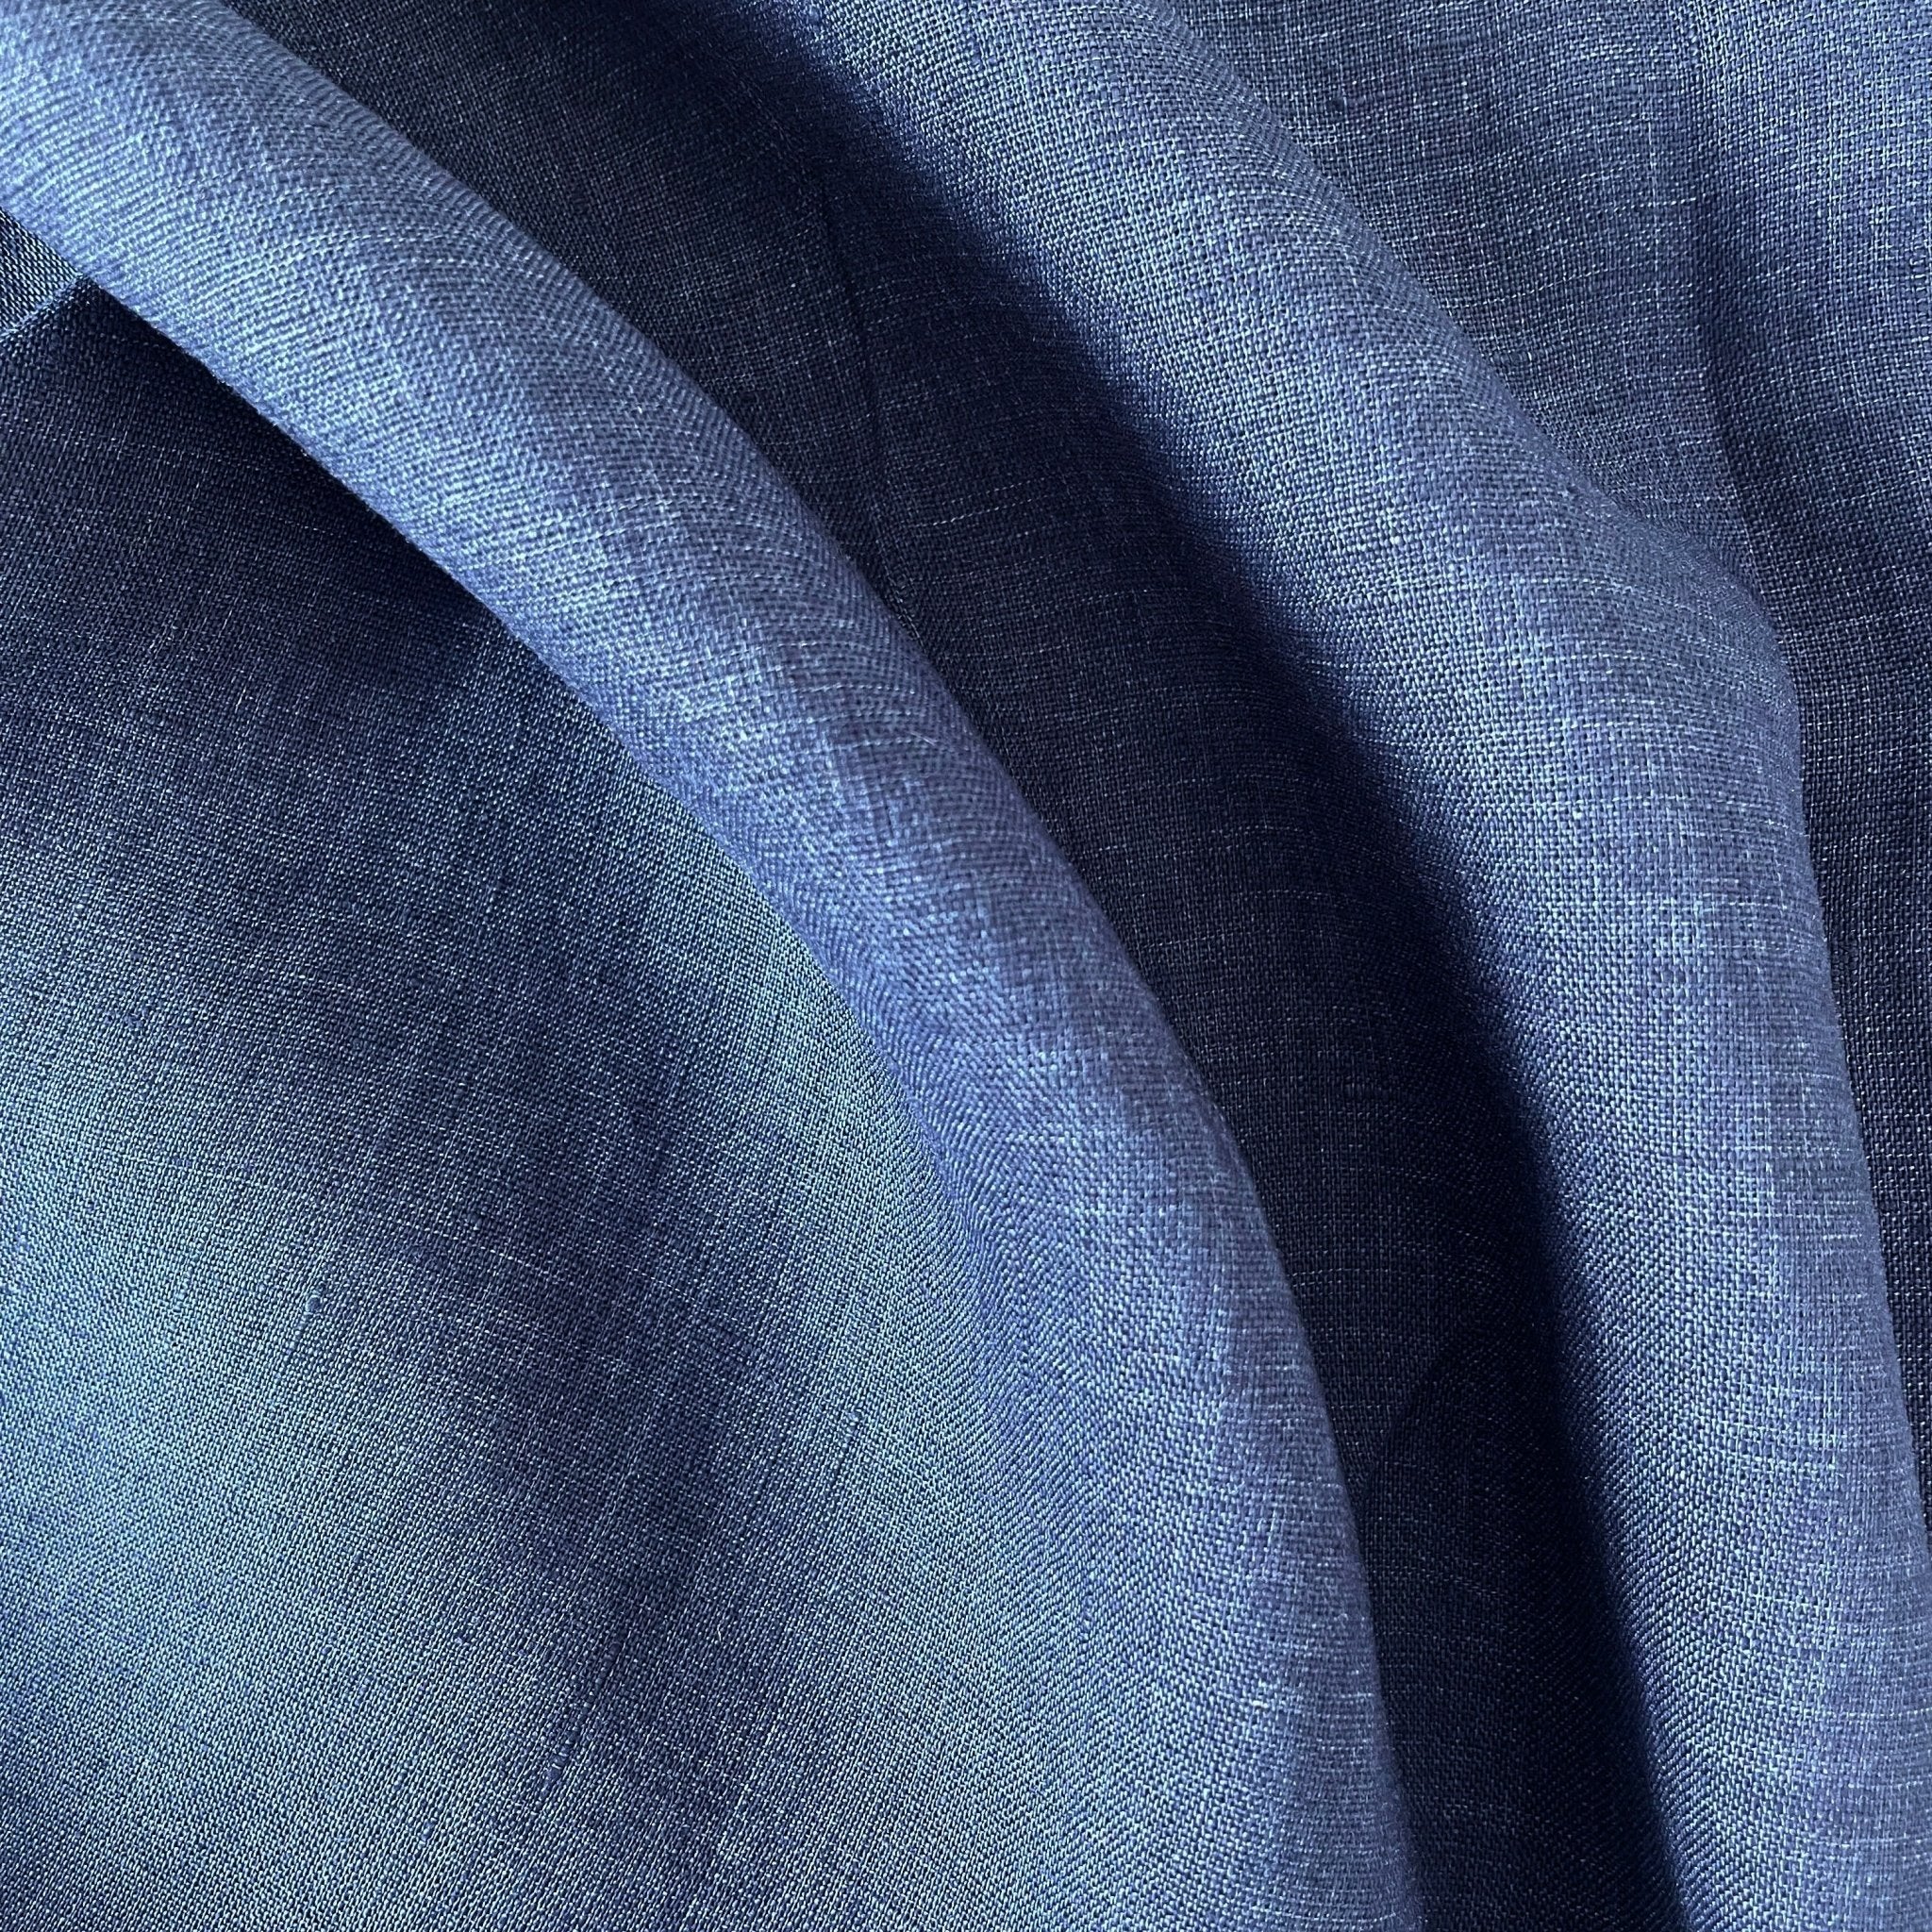 Linen Fabric Light Weight Soft Touch 21S 7115 7031 6785 6271 - The Linen Lab - Blue(dark)